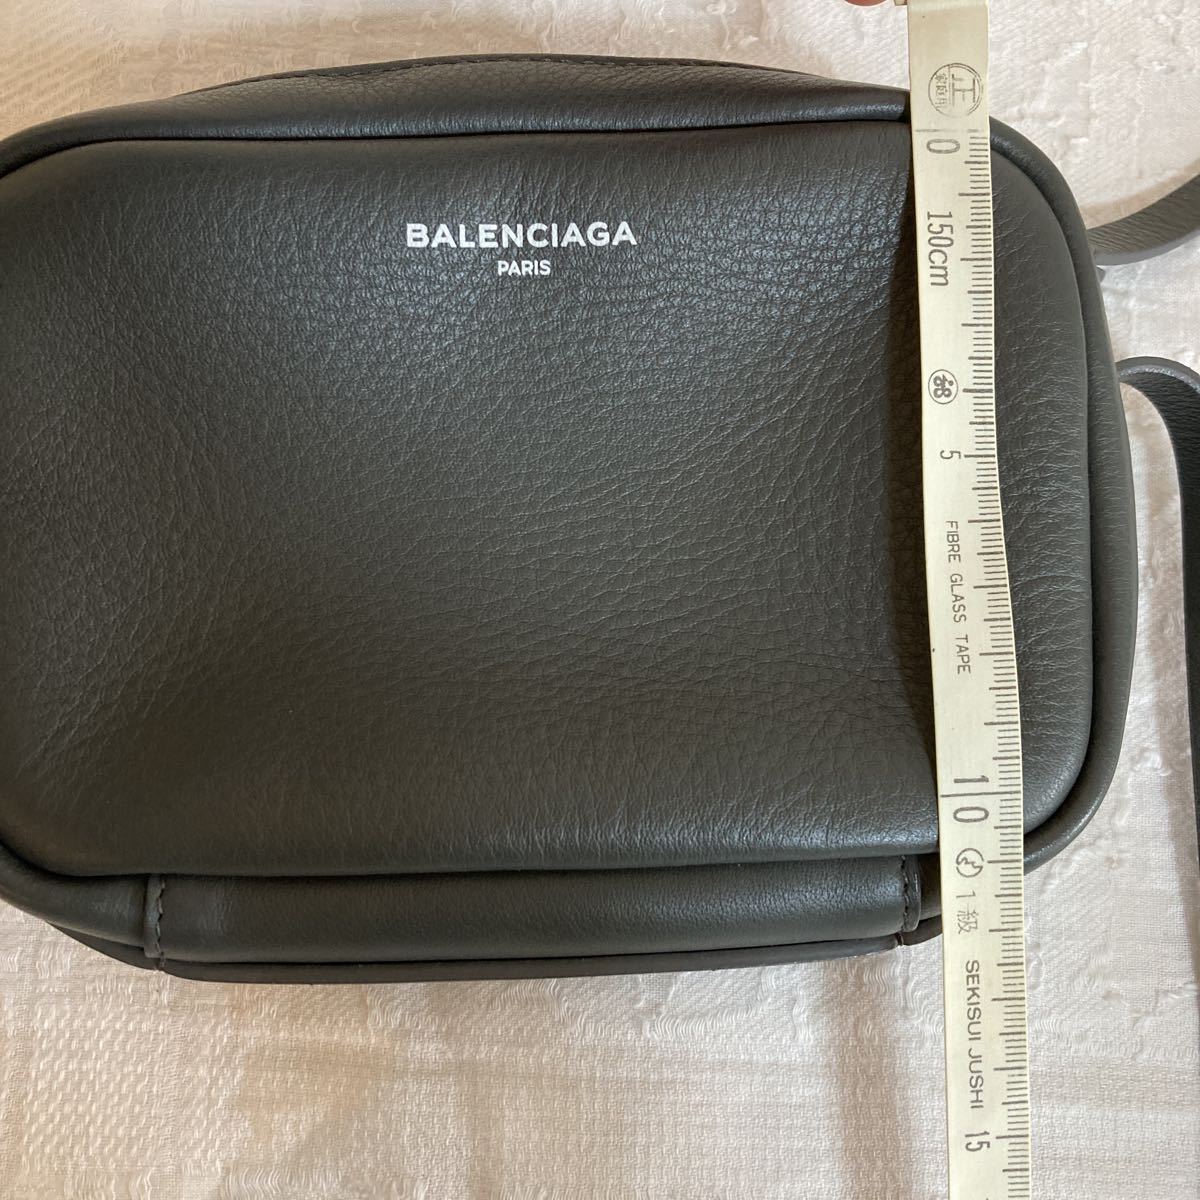  Balenciaga сумка на плечо камера сумка BALENCIAGA серый Mini сумка 